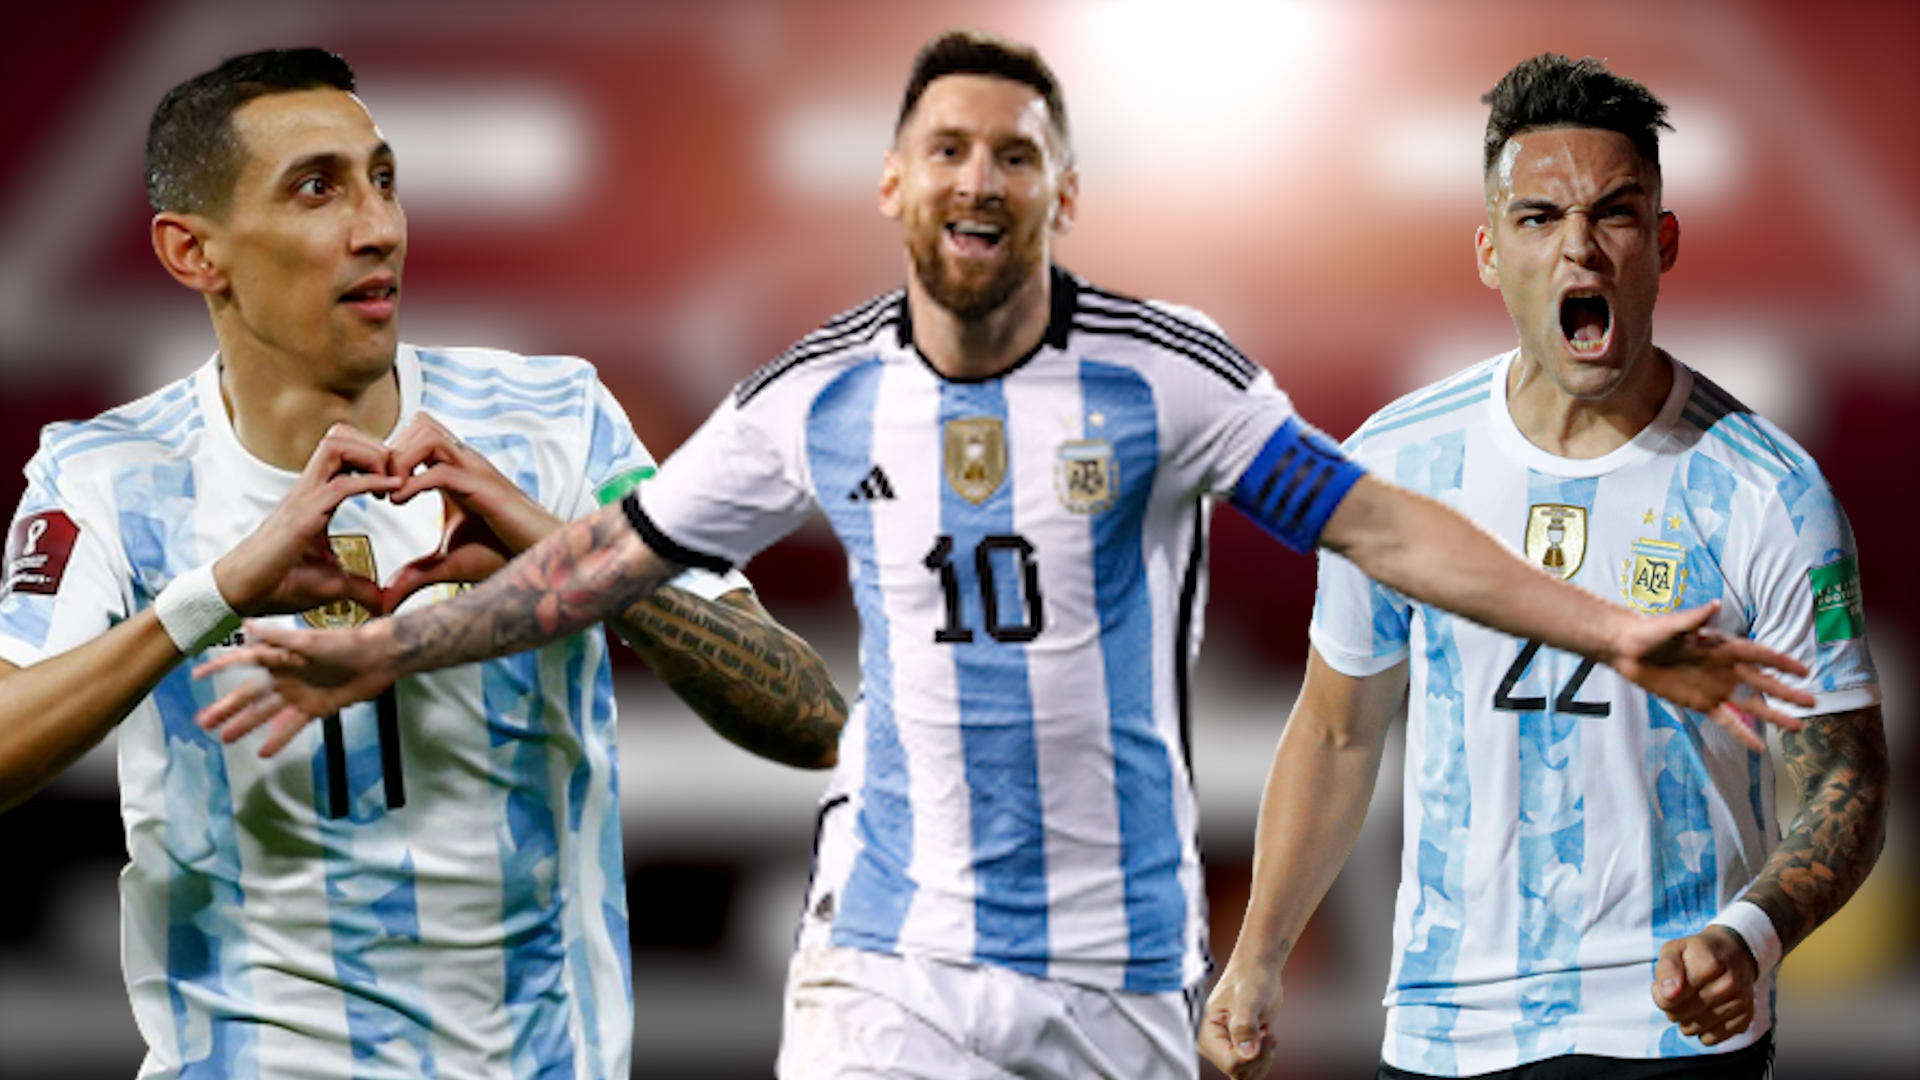 Đội hình tuyển Argentina sẵn sàng thách thức đối thủ Ả Rập Xê Út với bộ ba tấn công Messi, Aguero và Dybala. Đây là cơ hội để xem họ thi đấu đồng loạt và tạo ra những pha bóng đẳng cấp.